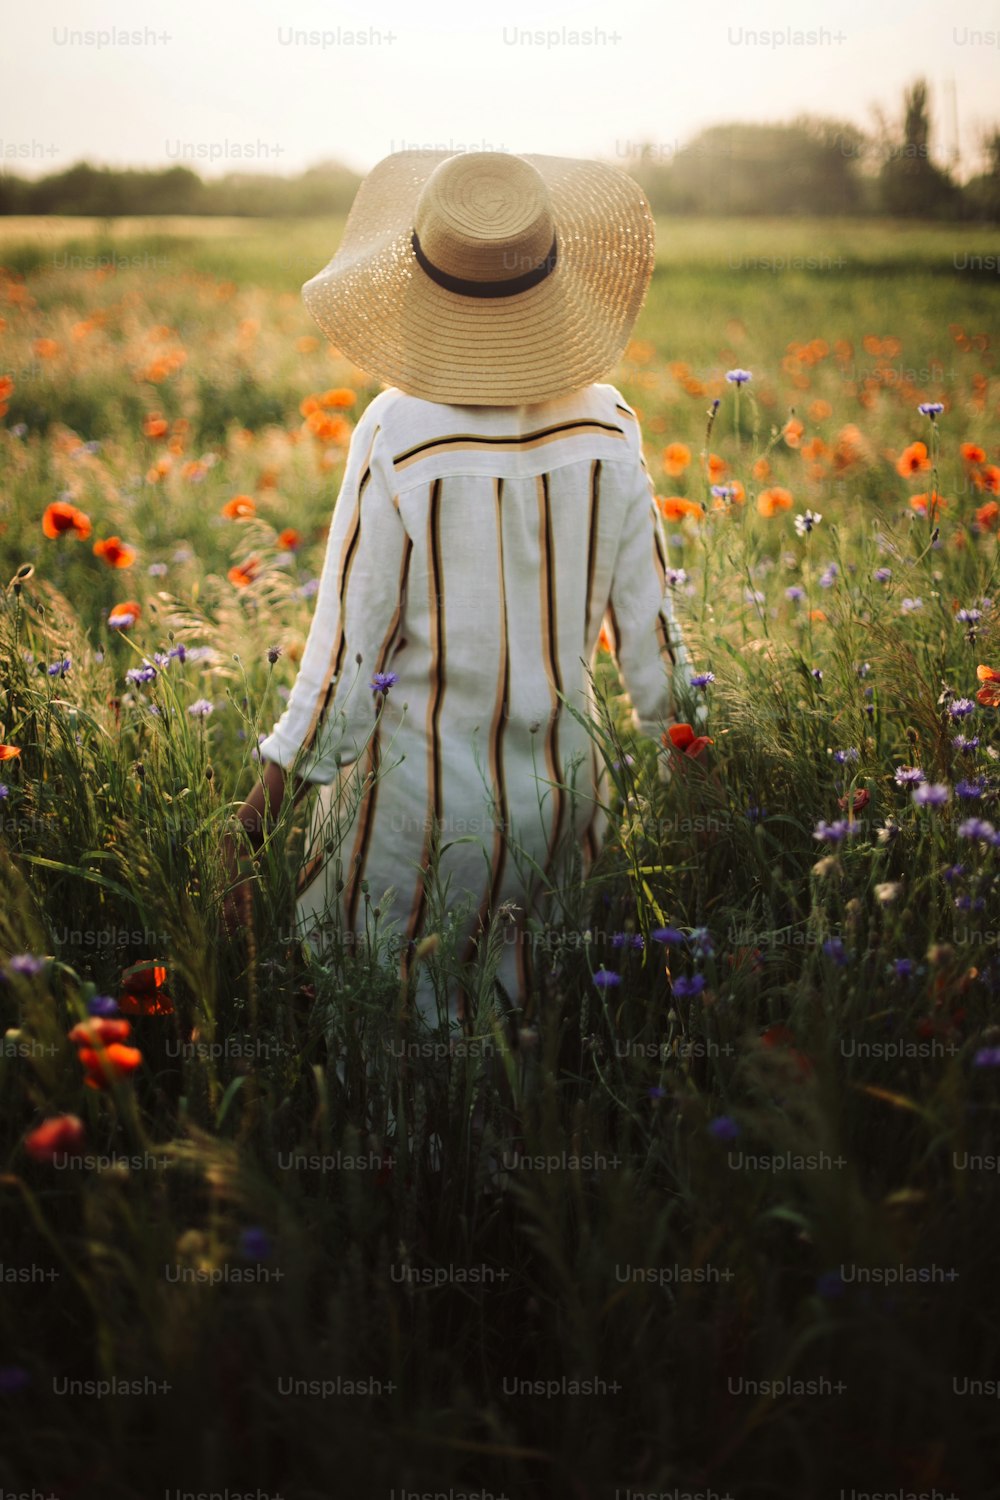 Jeune femme en robe de lin rustique marchant parmi les coquelicots et les bleuets dans la campagne de prairie d’été à la lumière du coucher du soleil. Slow life rural. Profiter d’une vie simple. Fille au chapeau dans les fleurs sauvages